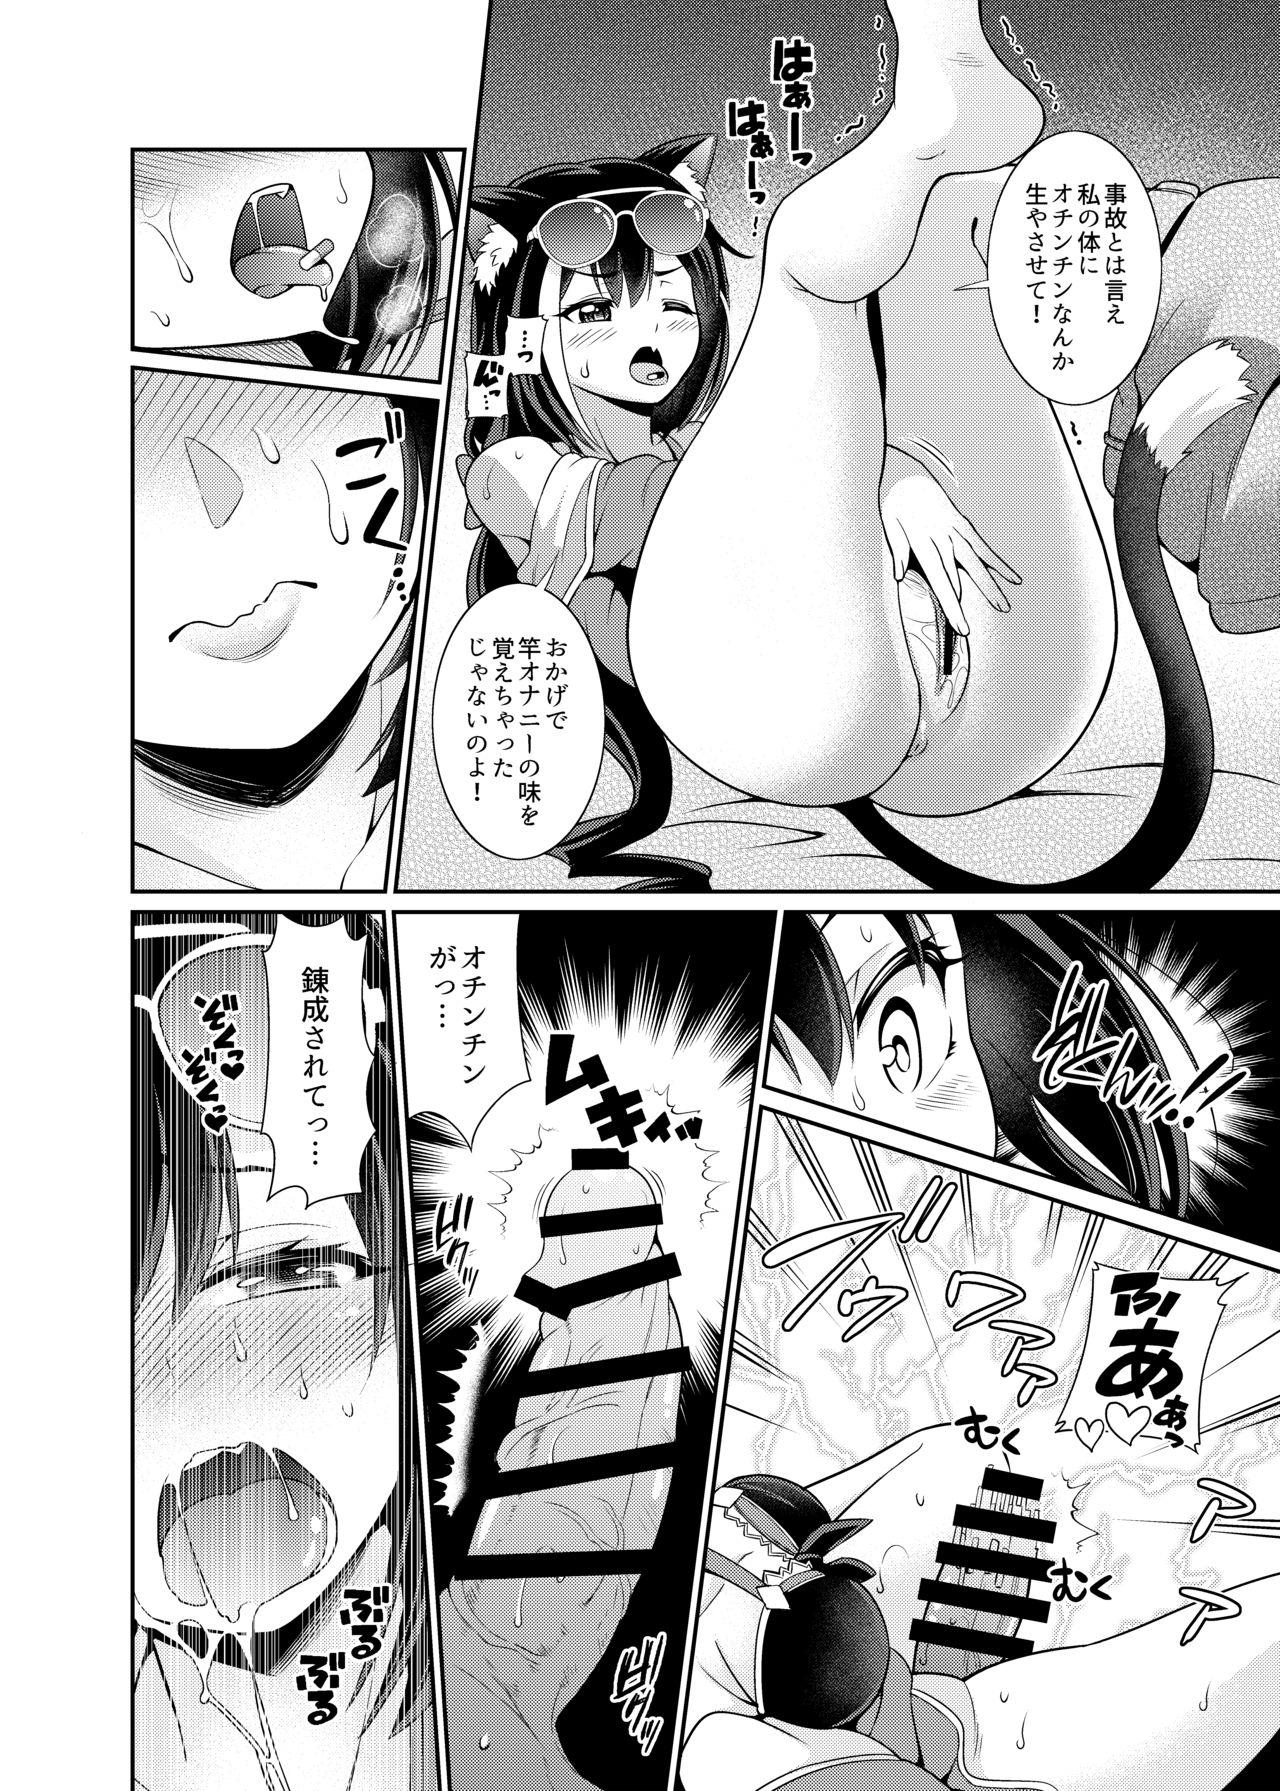 Time Umi ni nante Kuru kara…Ochinchin ga Haechau no yo!! - Princess connect Storyline - Page 4